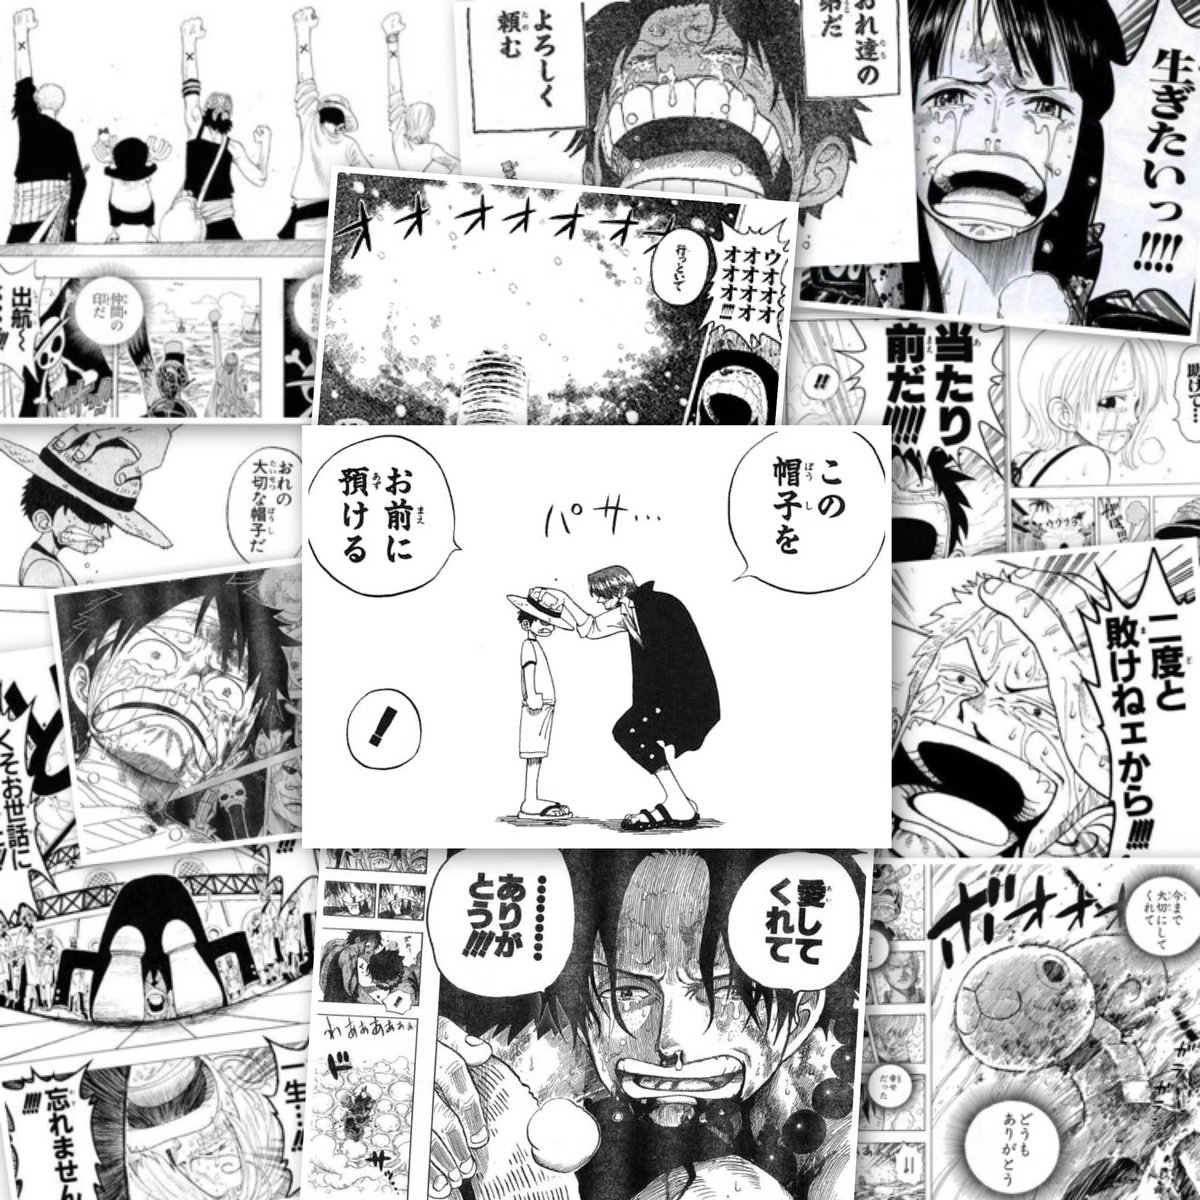 Hiromu در توییتر 今までたくさんの感動をありがとう One Pieceはちっちゃい頃から読んでいる 1番好きな漫画です もう少し なんて言わないでもっともっと連載してほしい これからも期待してます Onepiece ワンピース周年 周年おめでとう 尾田っちありがとう